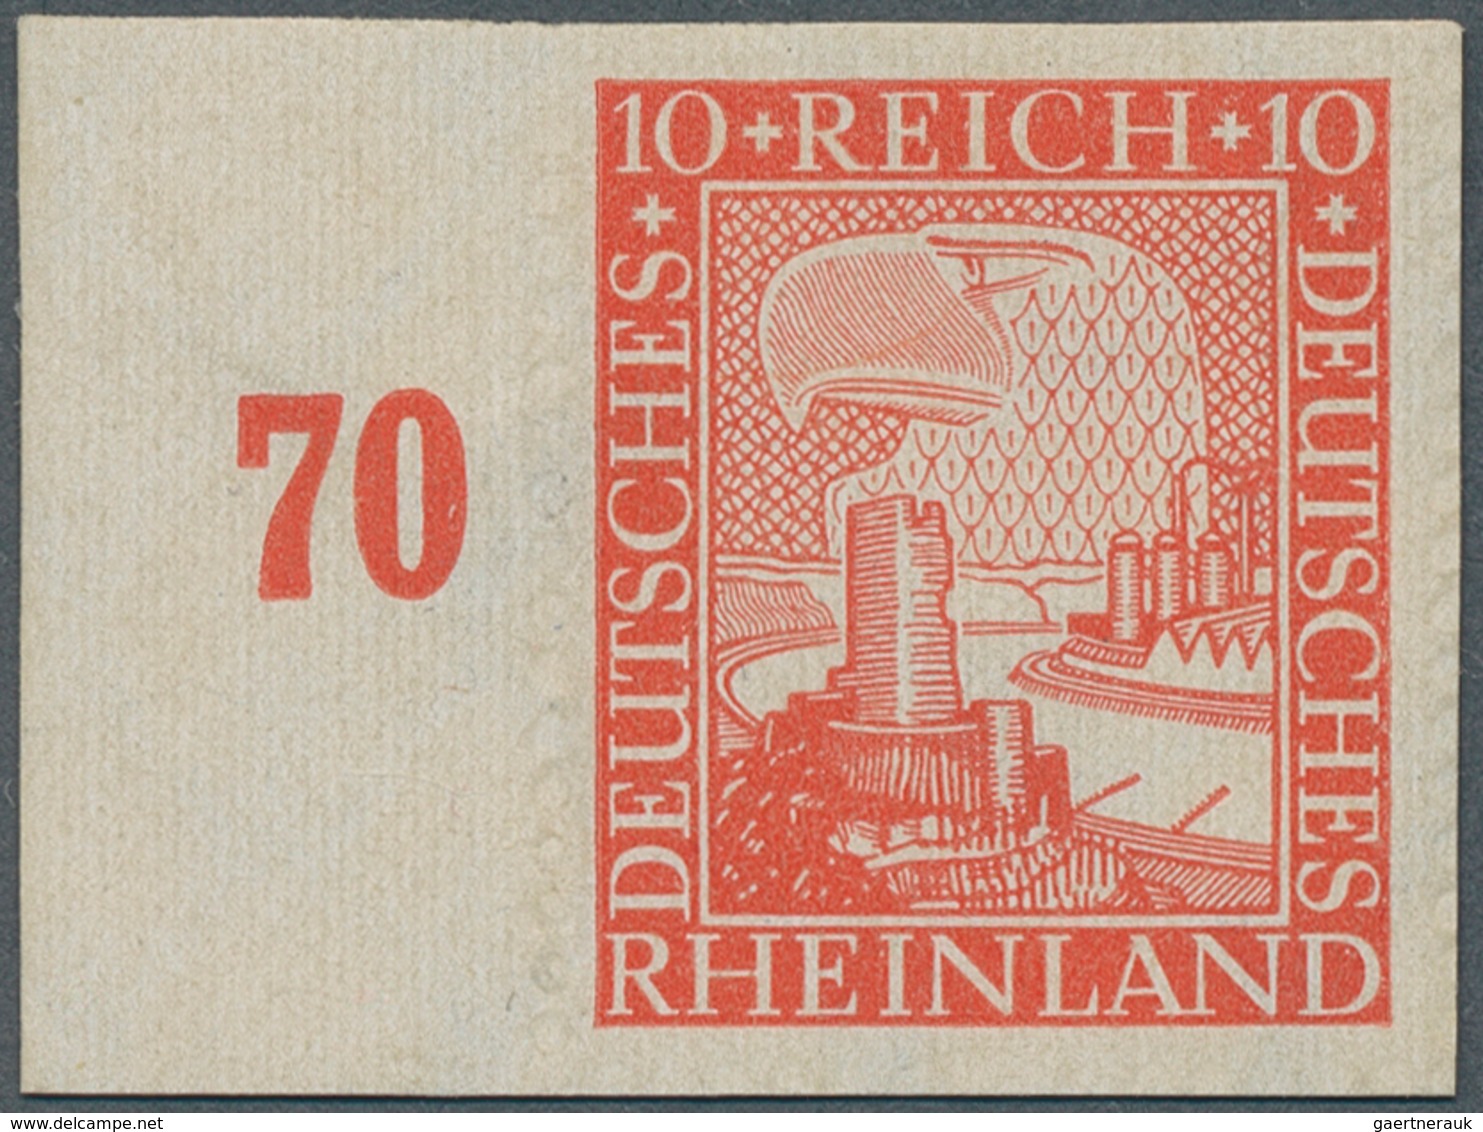 Deutsches Reich - Weimar: 1925, 1000 Jahre Rheinland 10 Pfg. Zinnoberrot, UNGEZÄHNT Vom Linken Seite - Ungebraucht